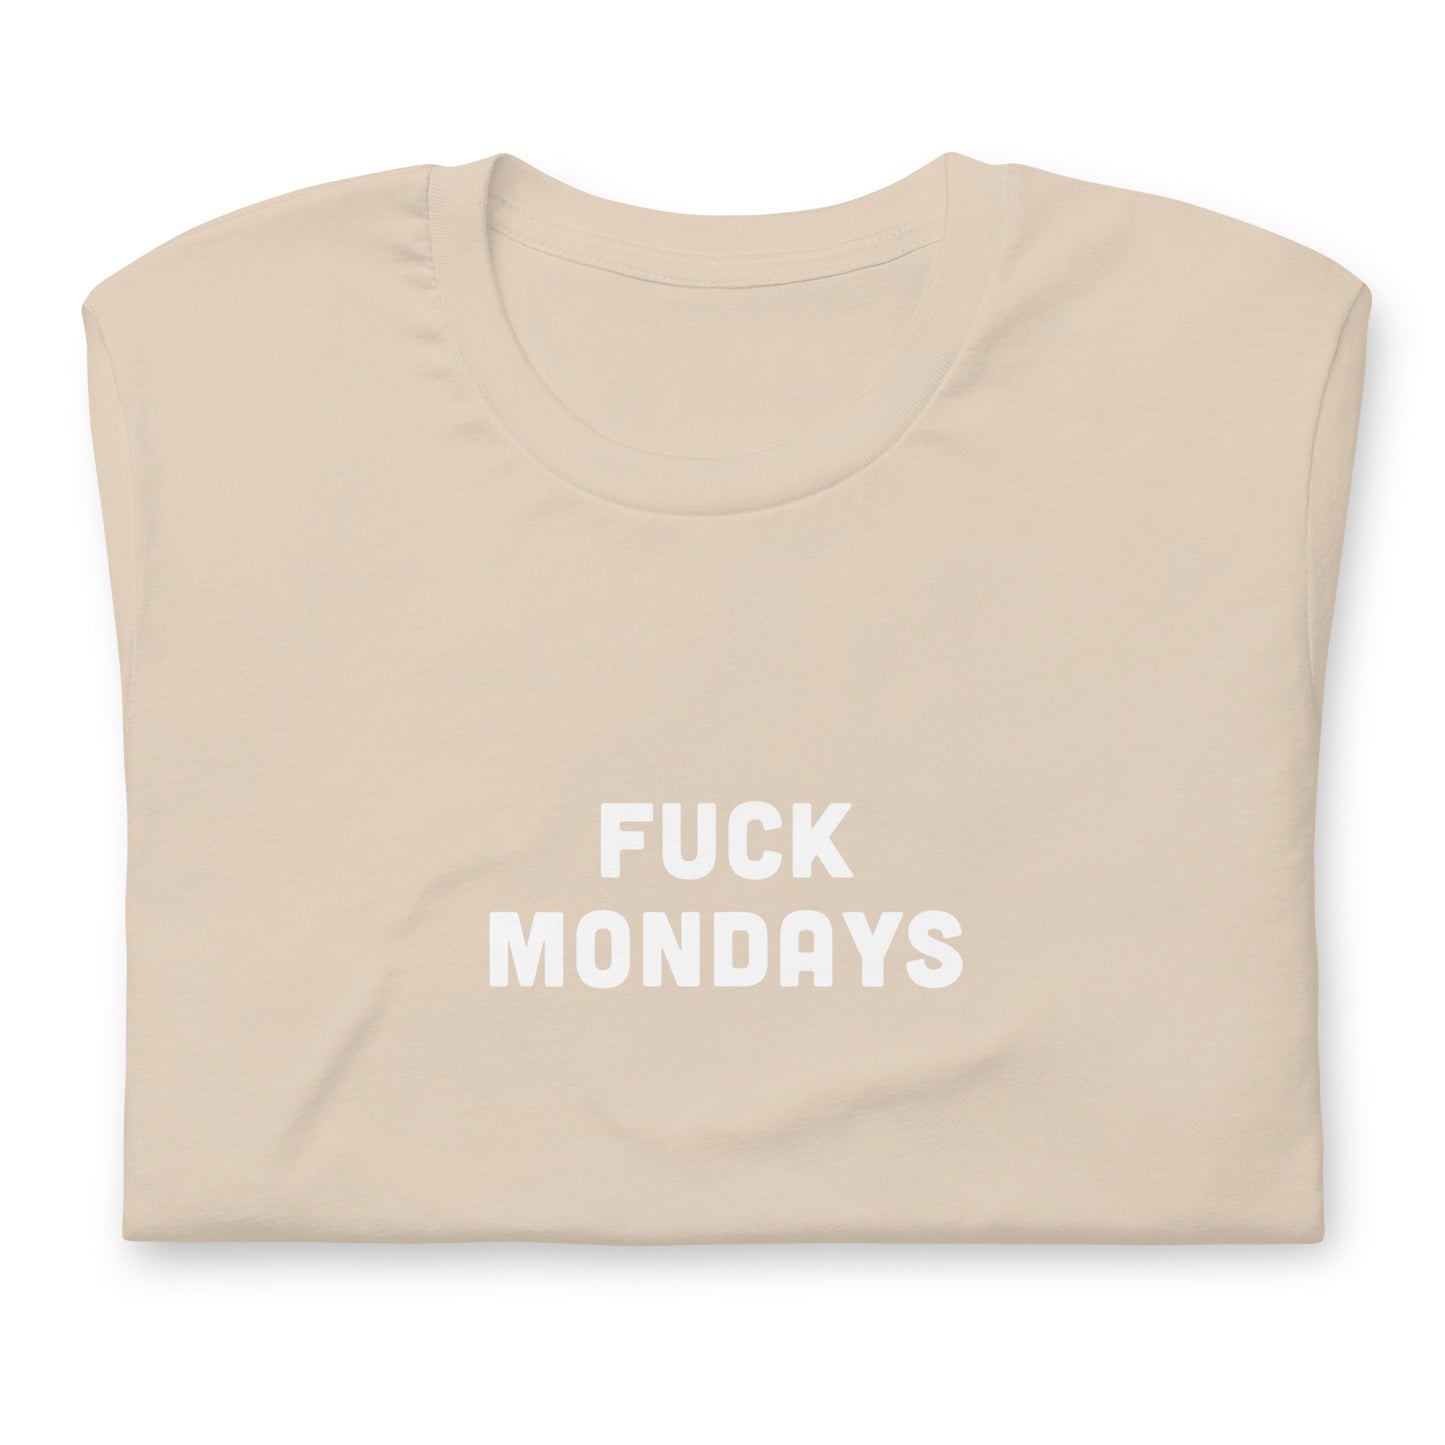 Fuck Mondays T-Shirt Size L Color Asphalt